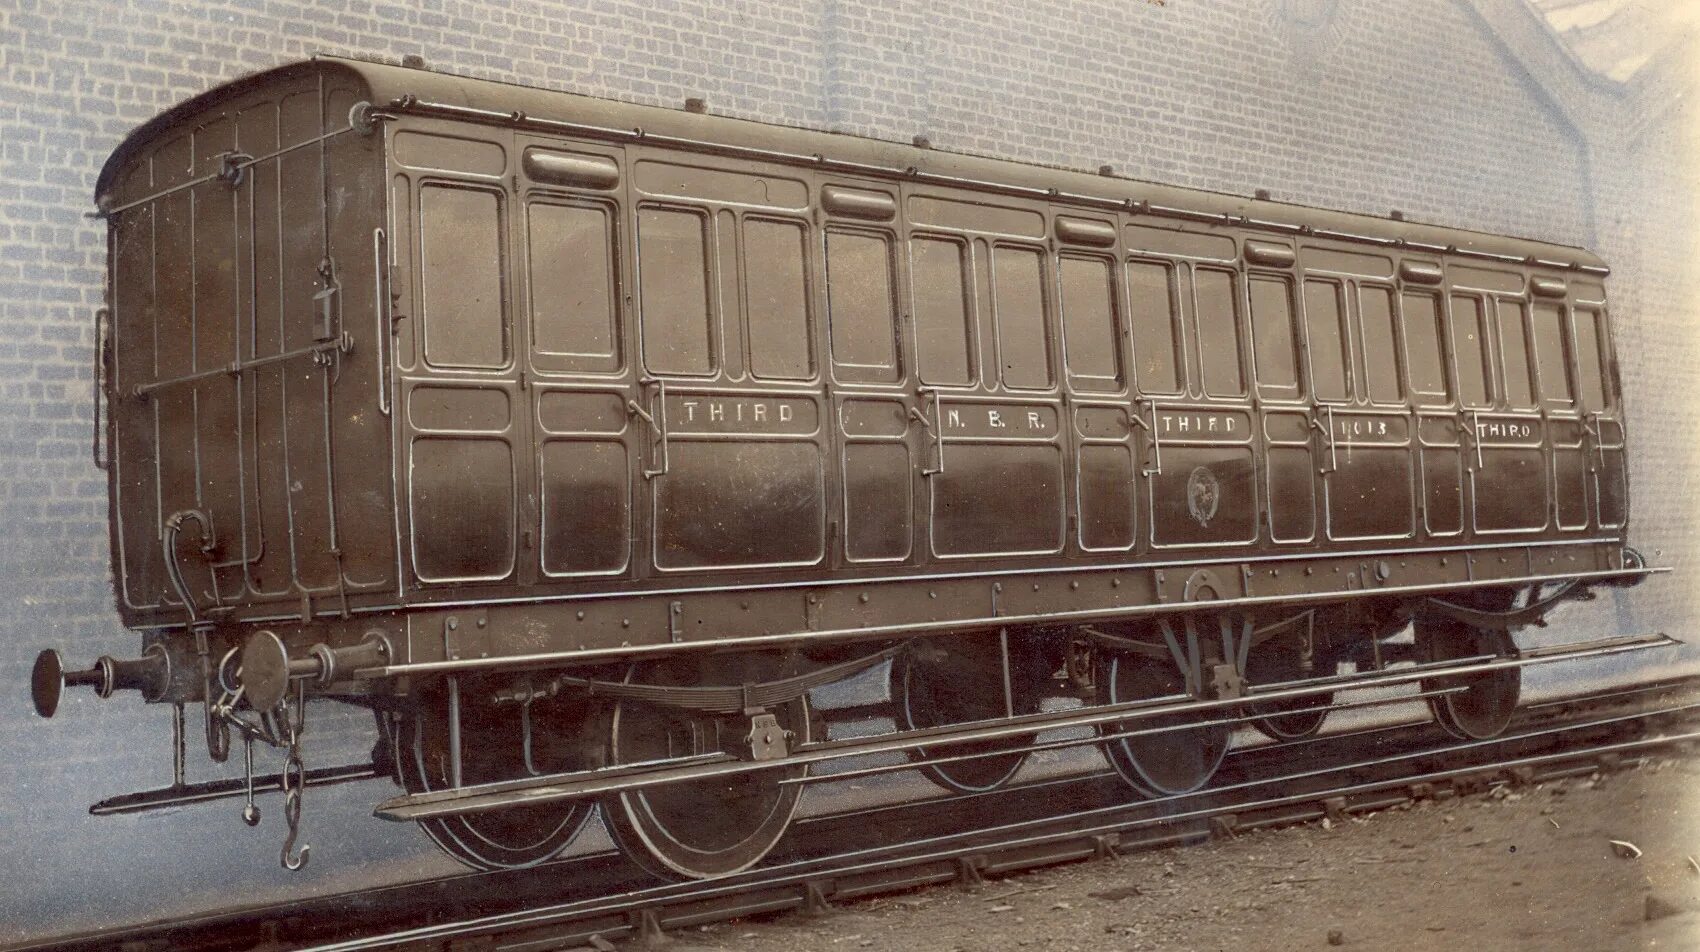 Carriage вагон. Вагоны 19 века. Вагон третьего класса. Корпус вагона. Прицепить вагон к поезду